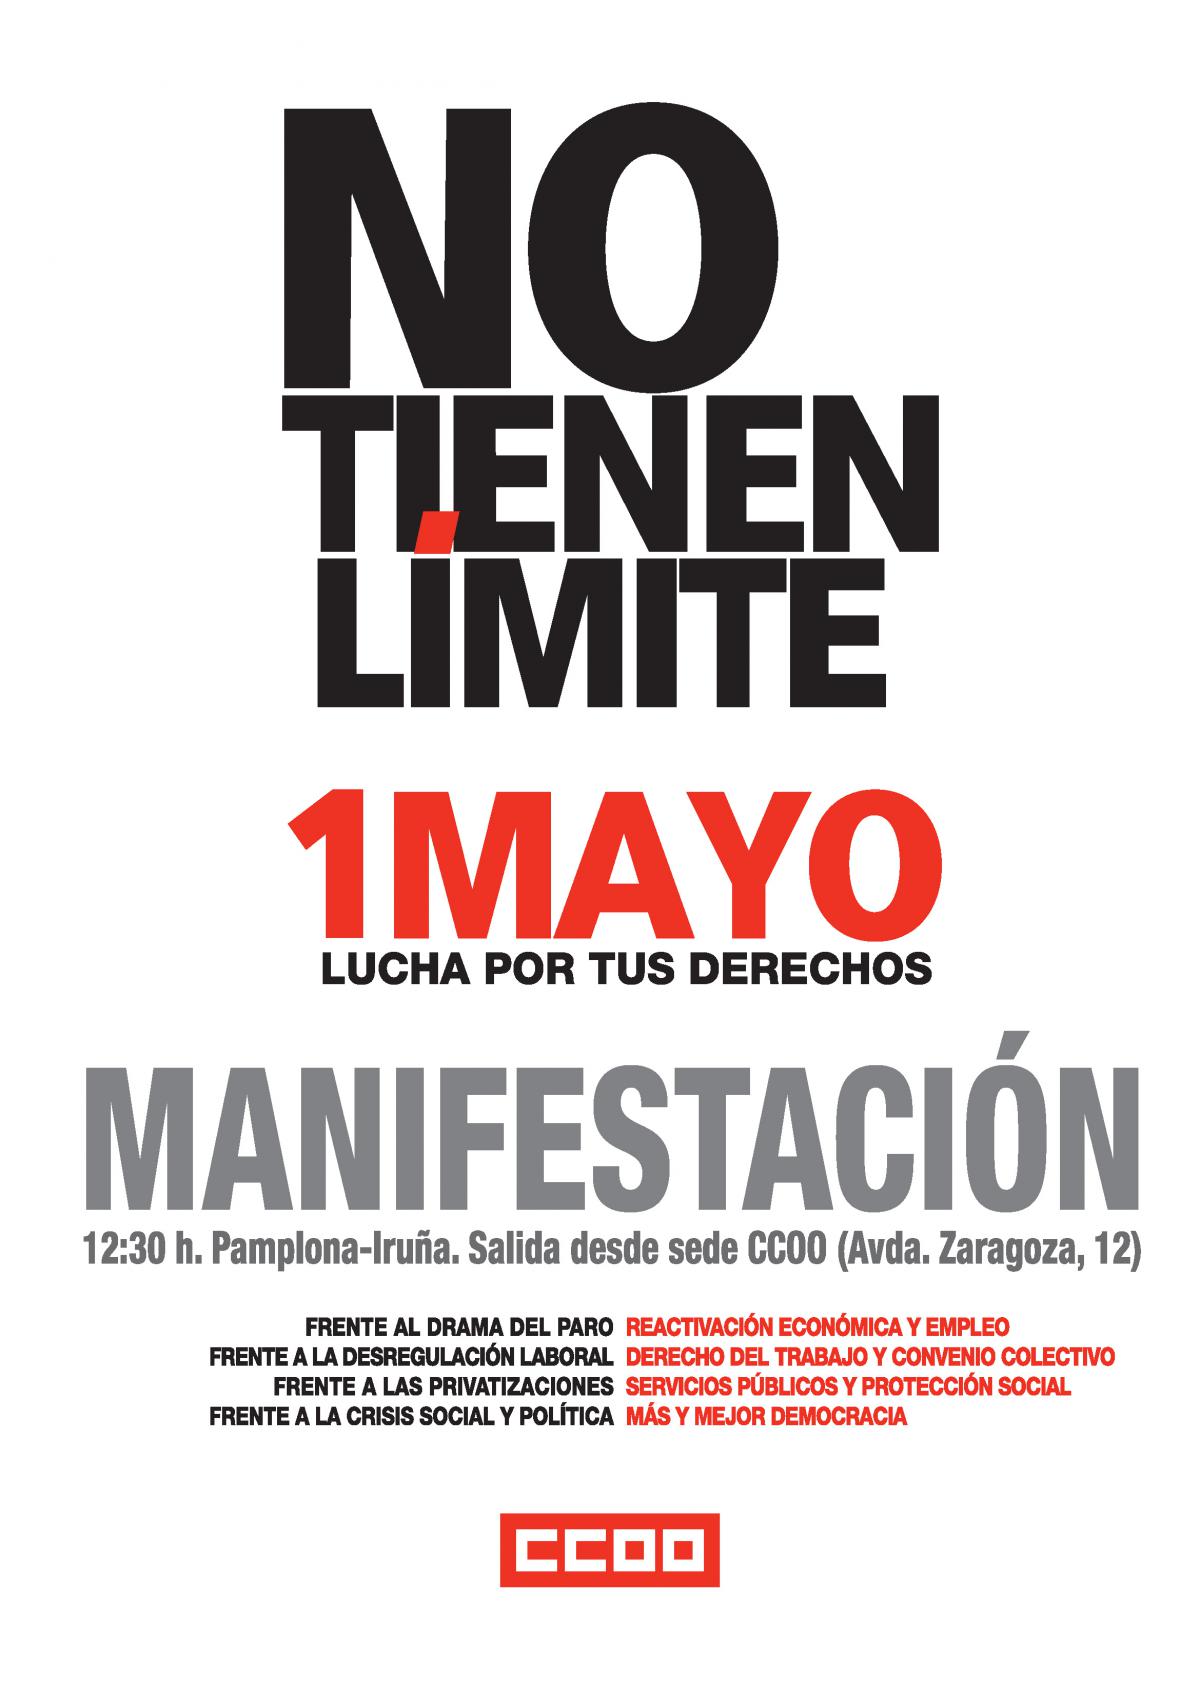 Cartel que anuncia la manifestación del 1 de mayo